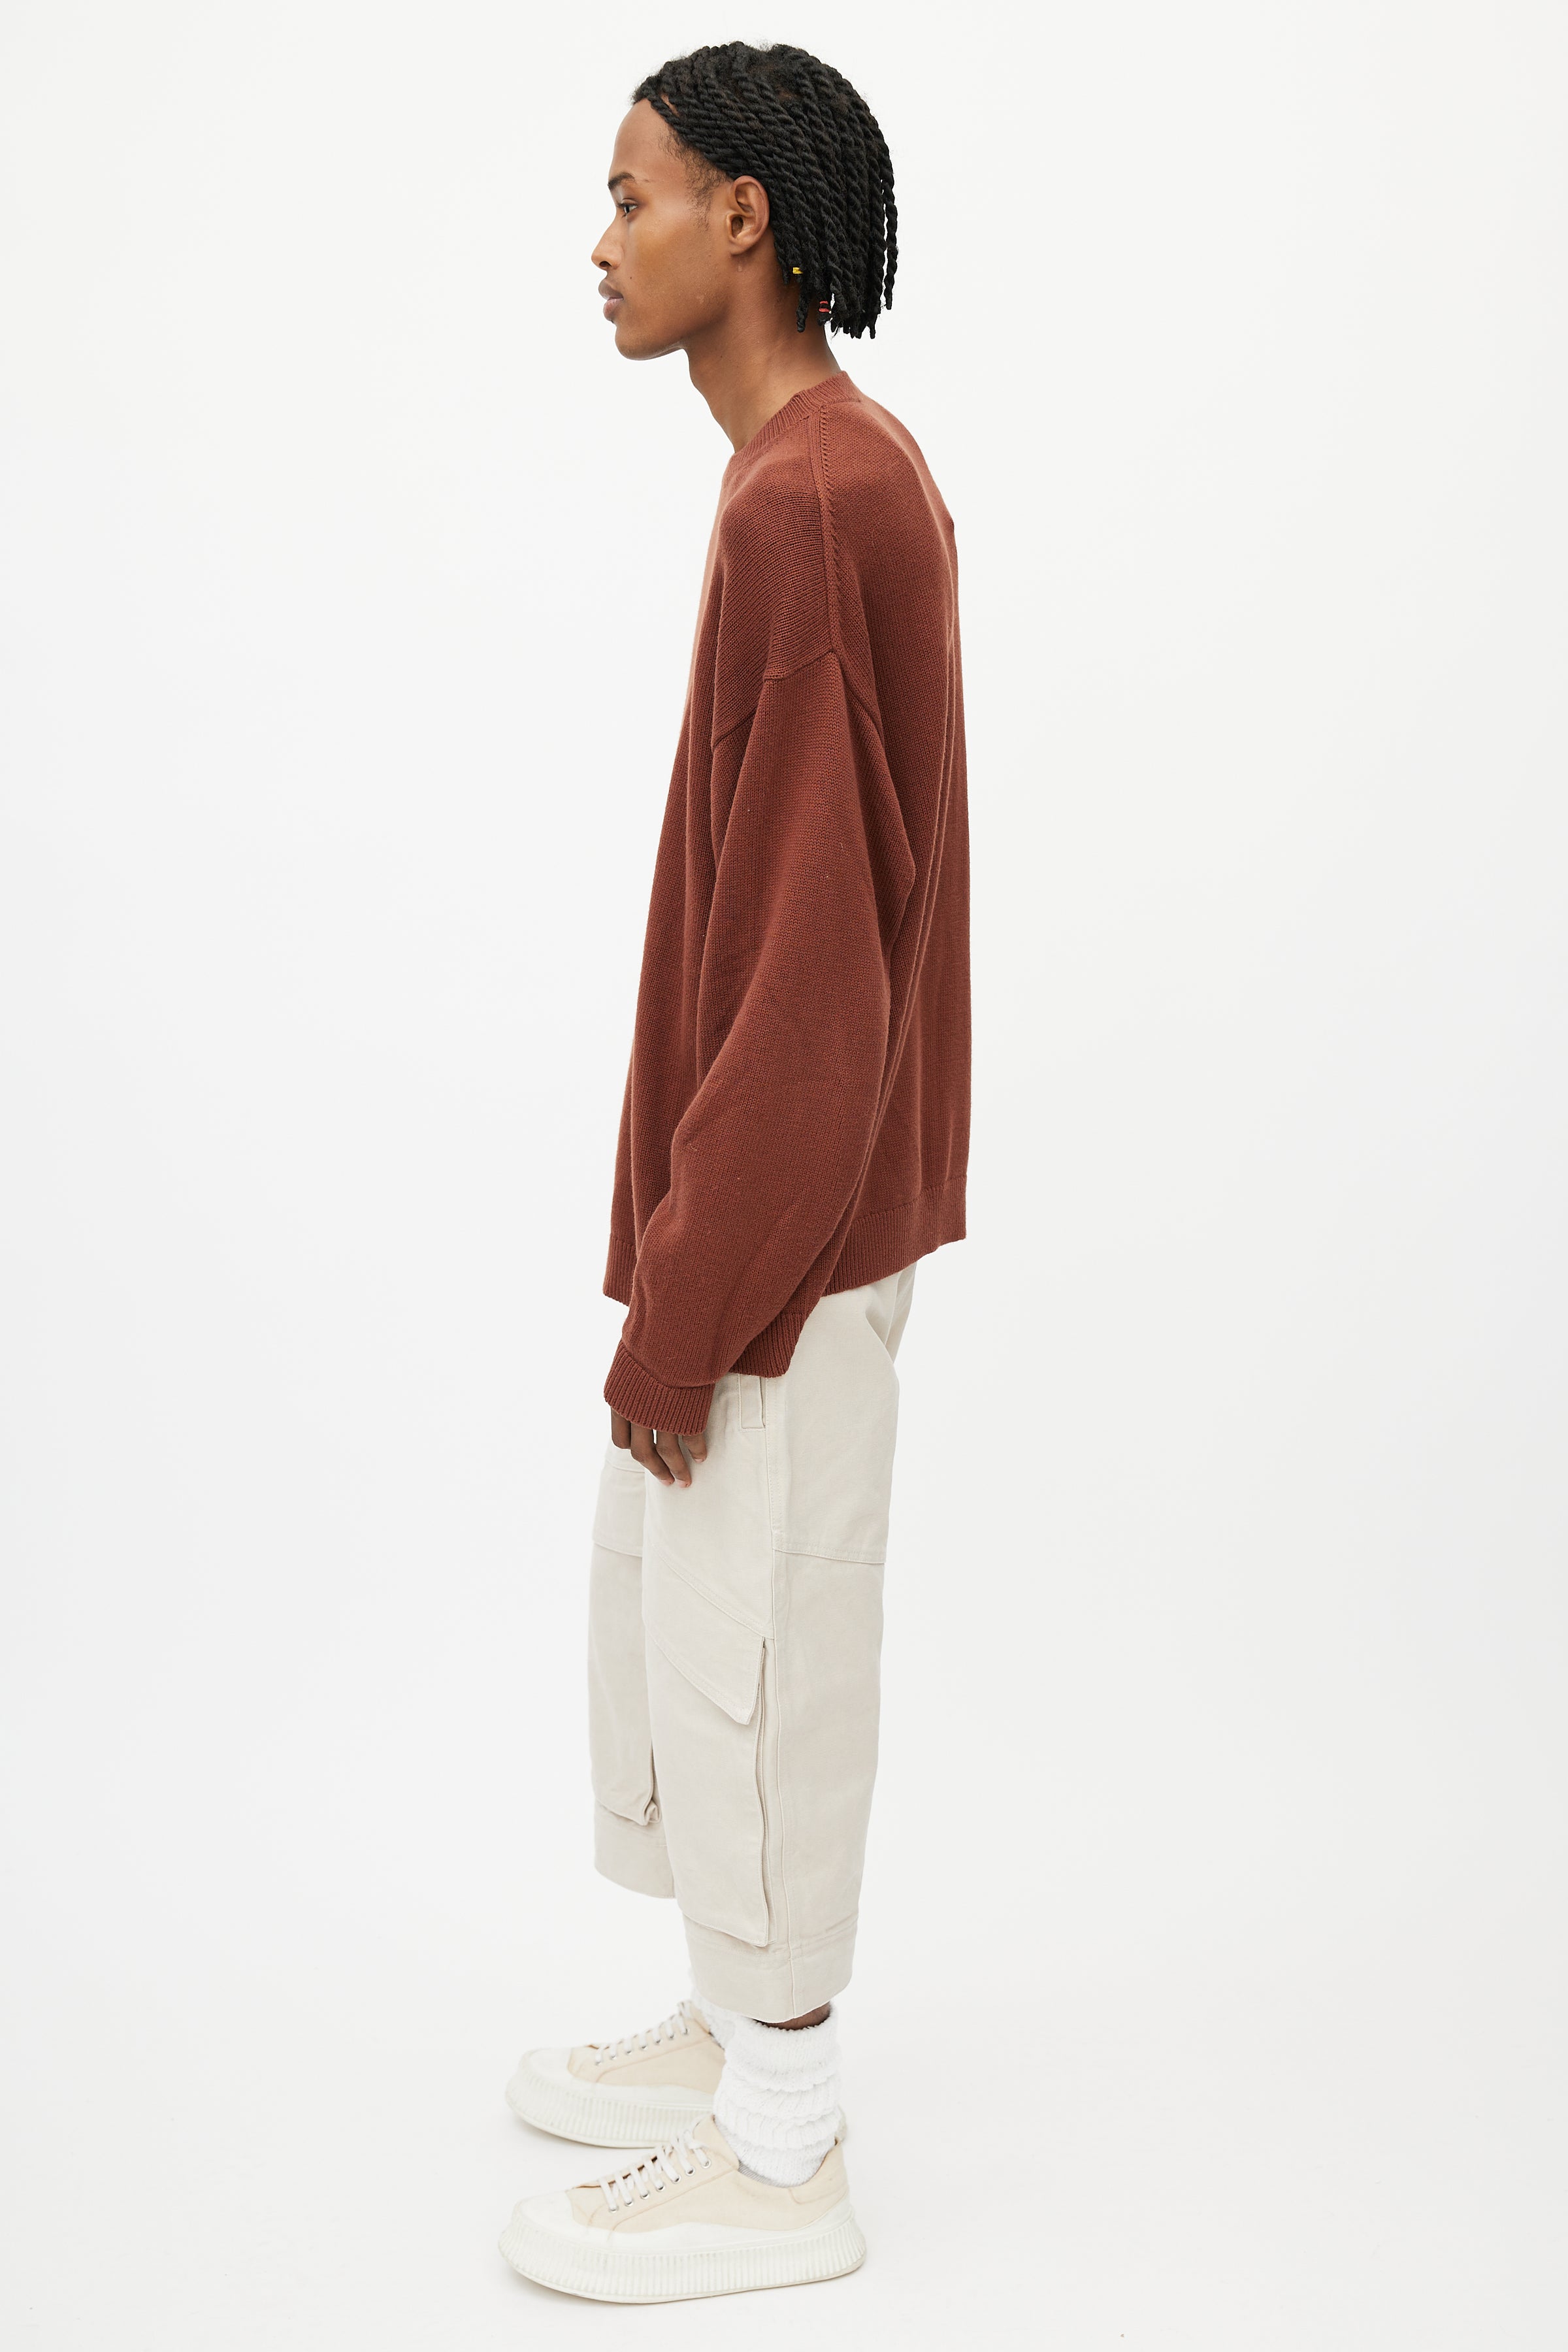 Studio Nicholson // Brown Merino Wool Oversized Sweater – VSP Consignment